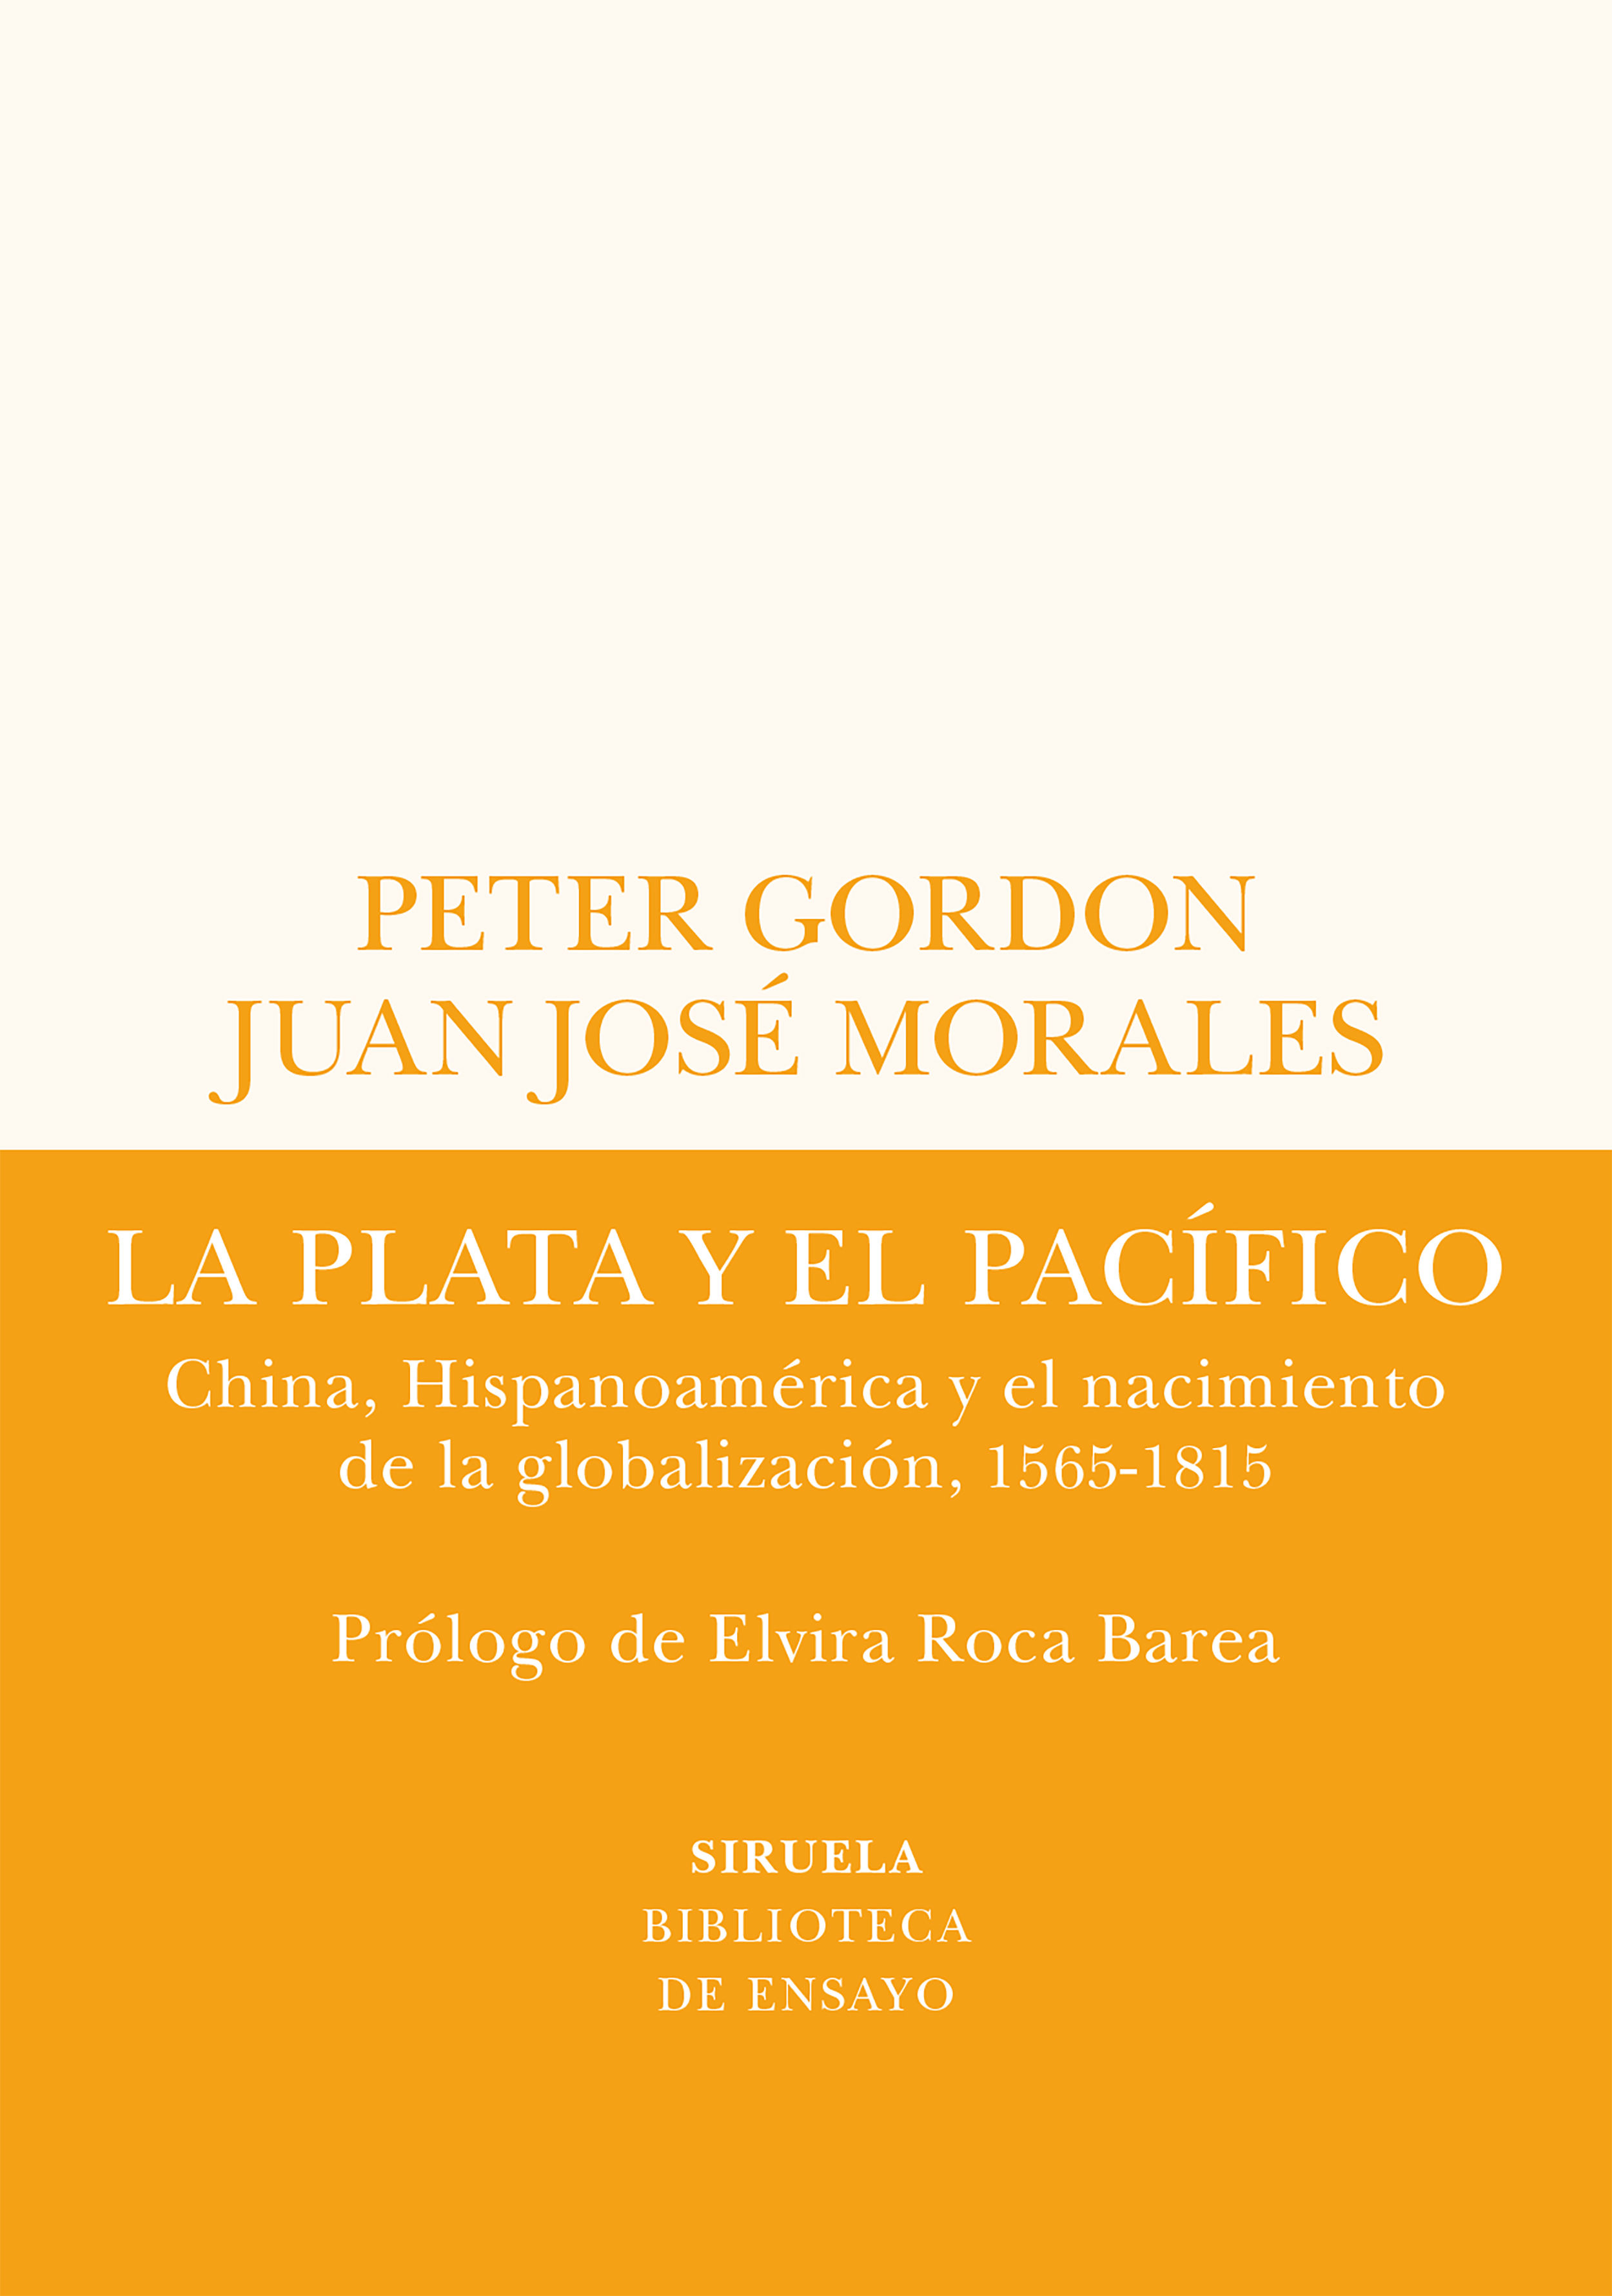 LA PLATA Y EL PACÍFICO. CHINA, HISPANOAMÉRICA Y EL NACIMIENTO DE LA GLOBALIZACIÓN, 1565-1815